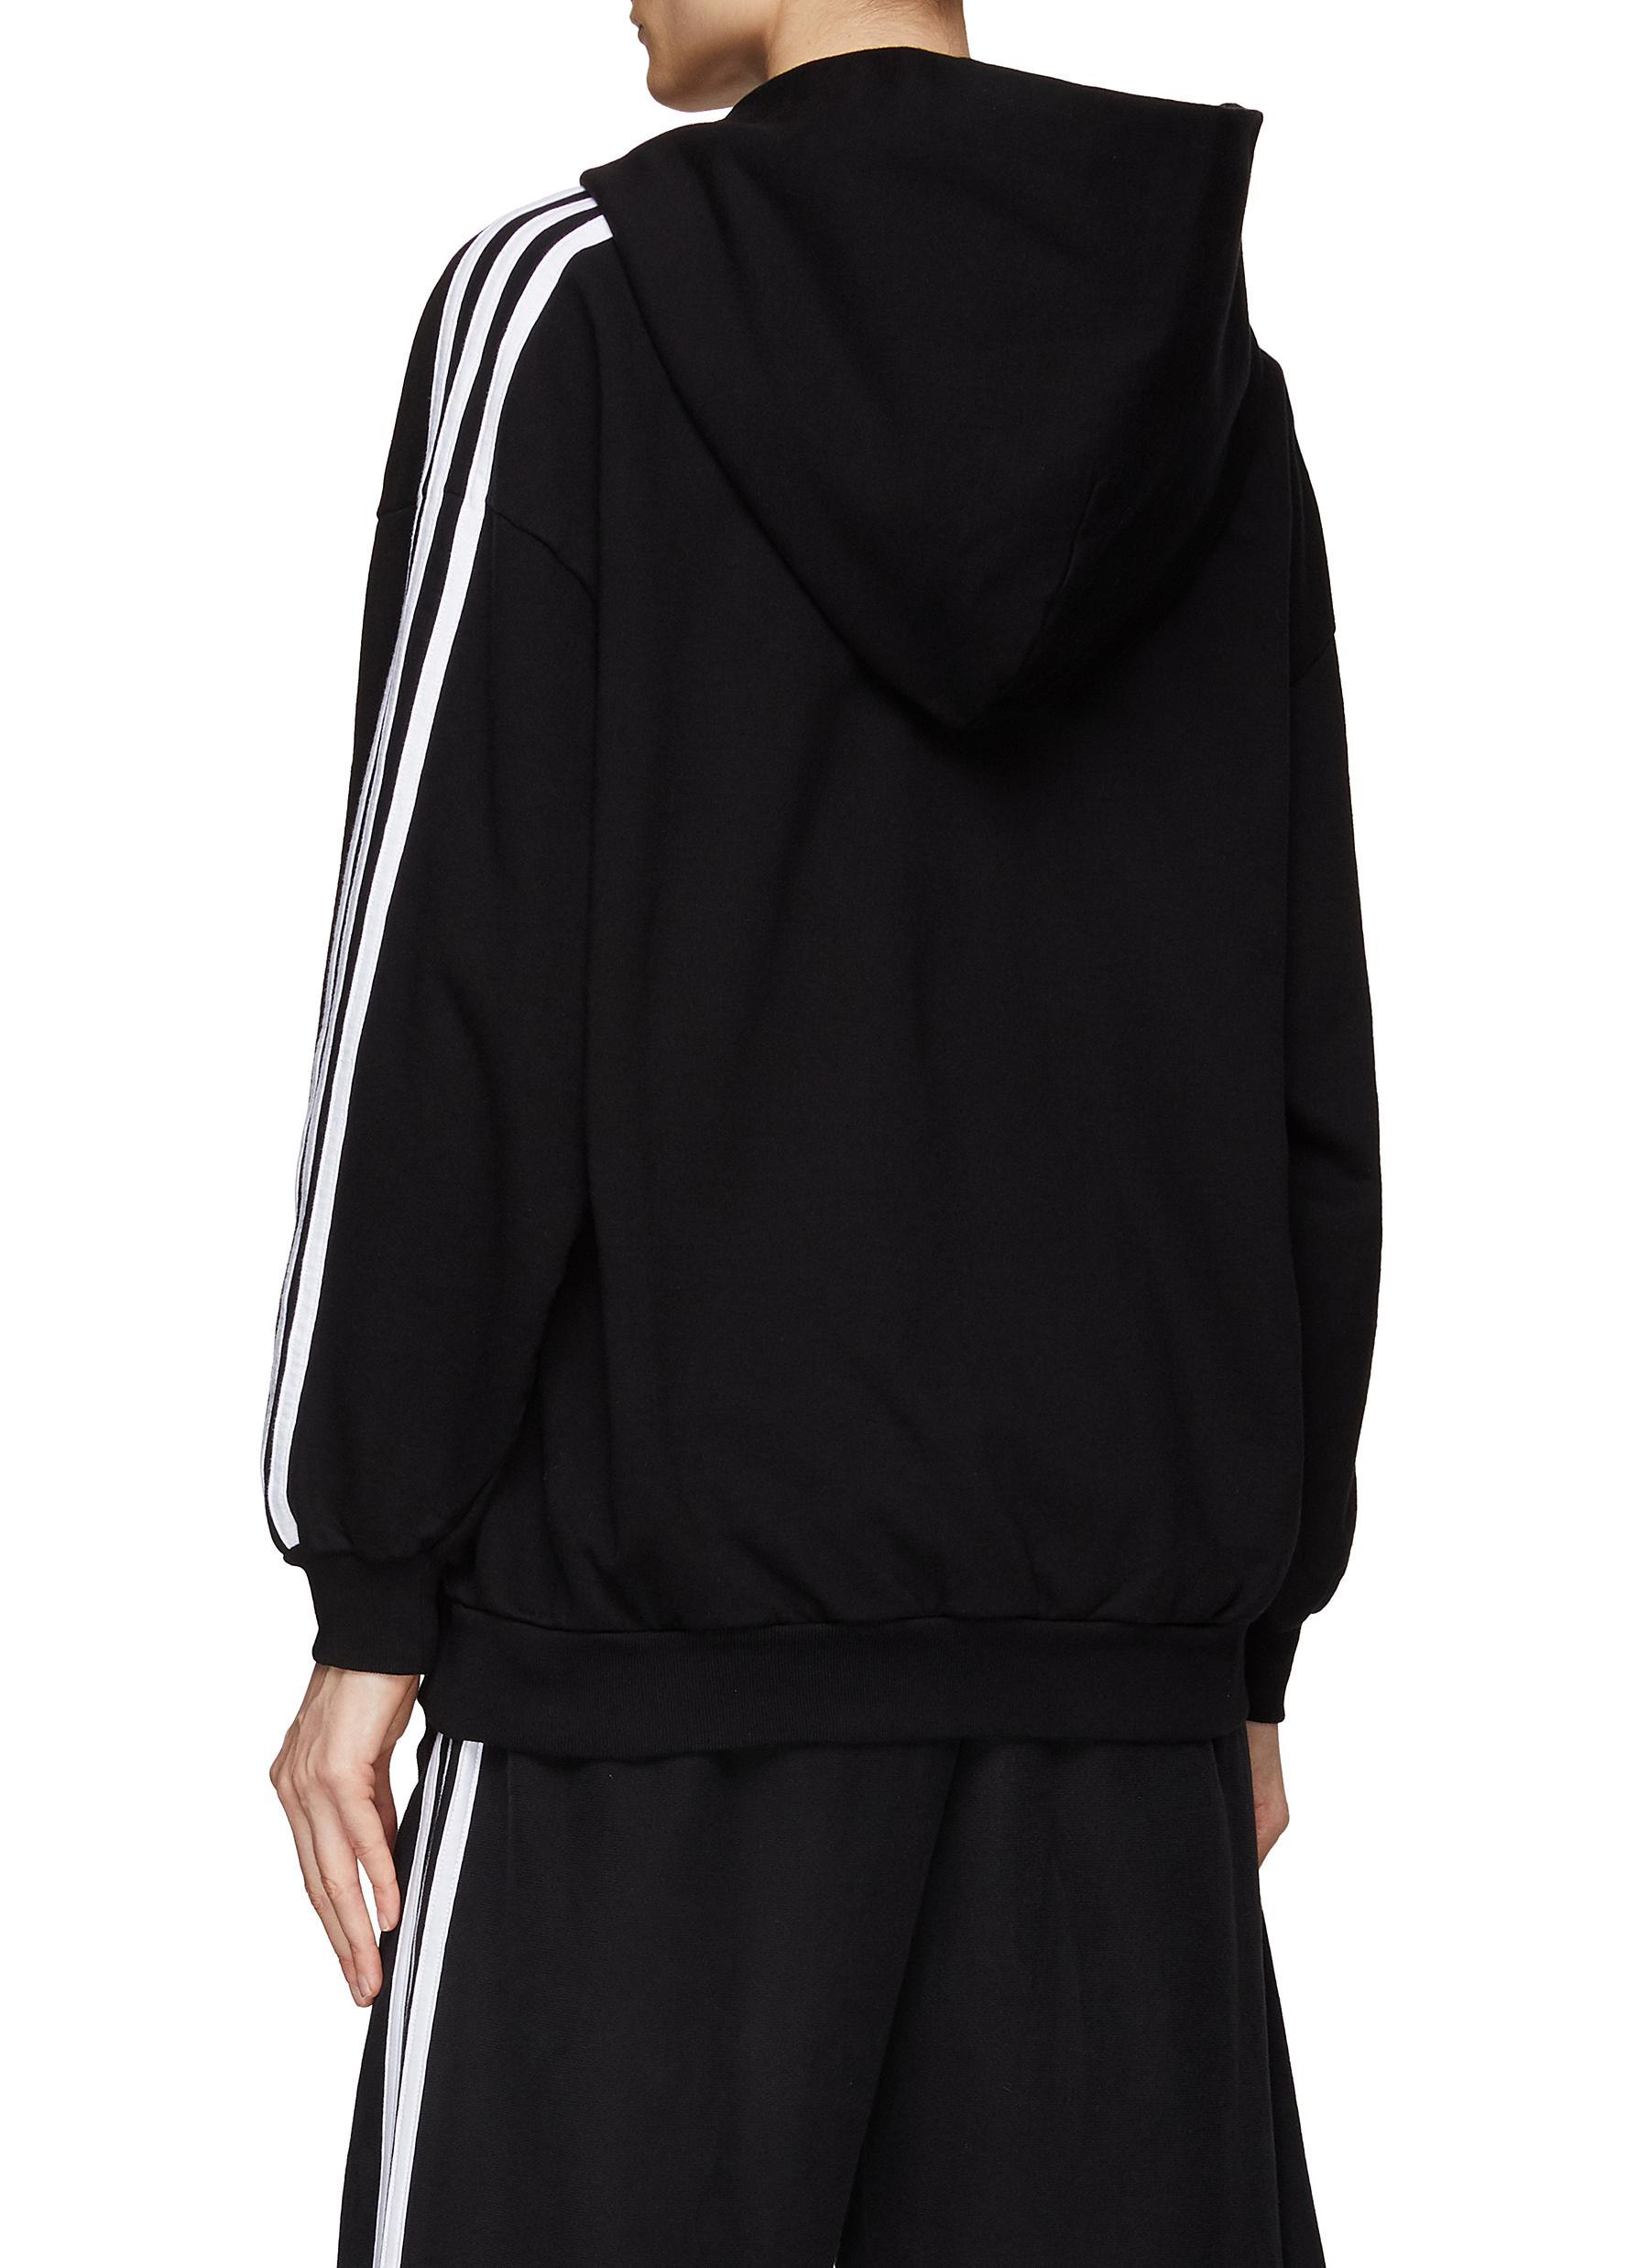 Balenciaga X Adidas Long Sleeve Zip Up Hoodie in Black | Lyst